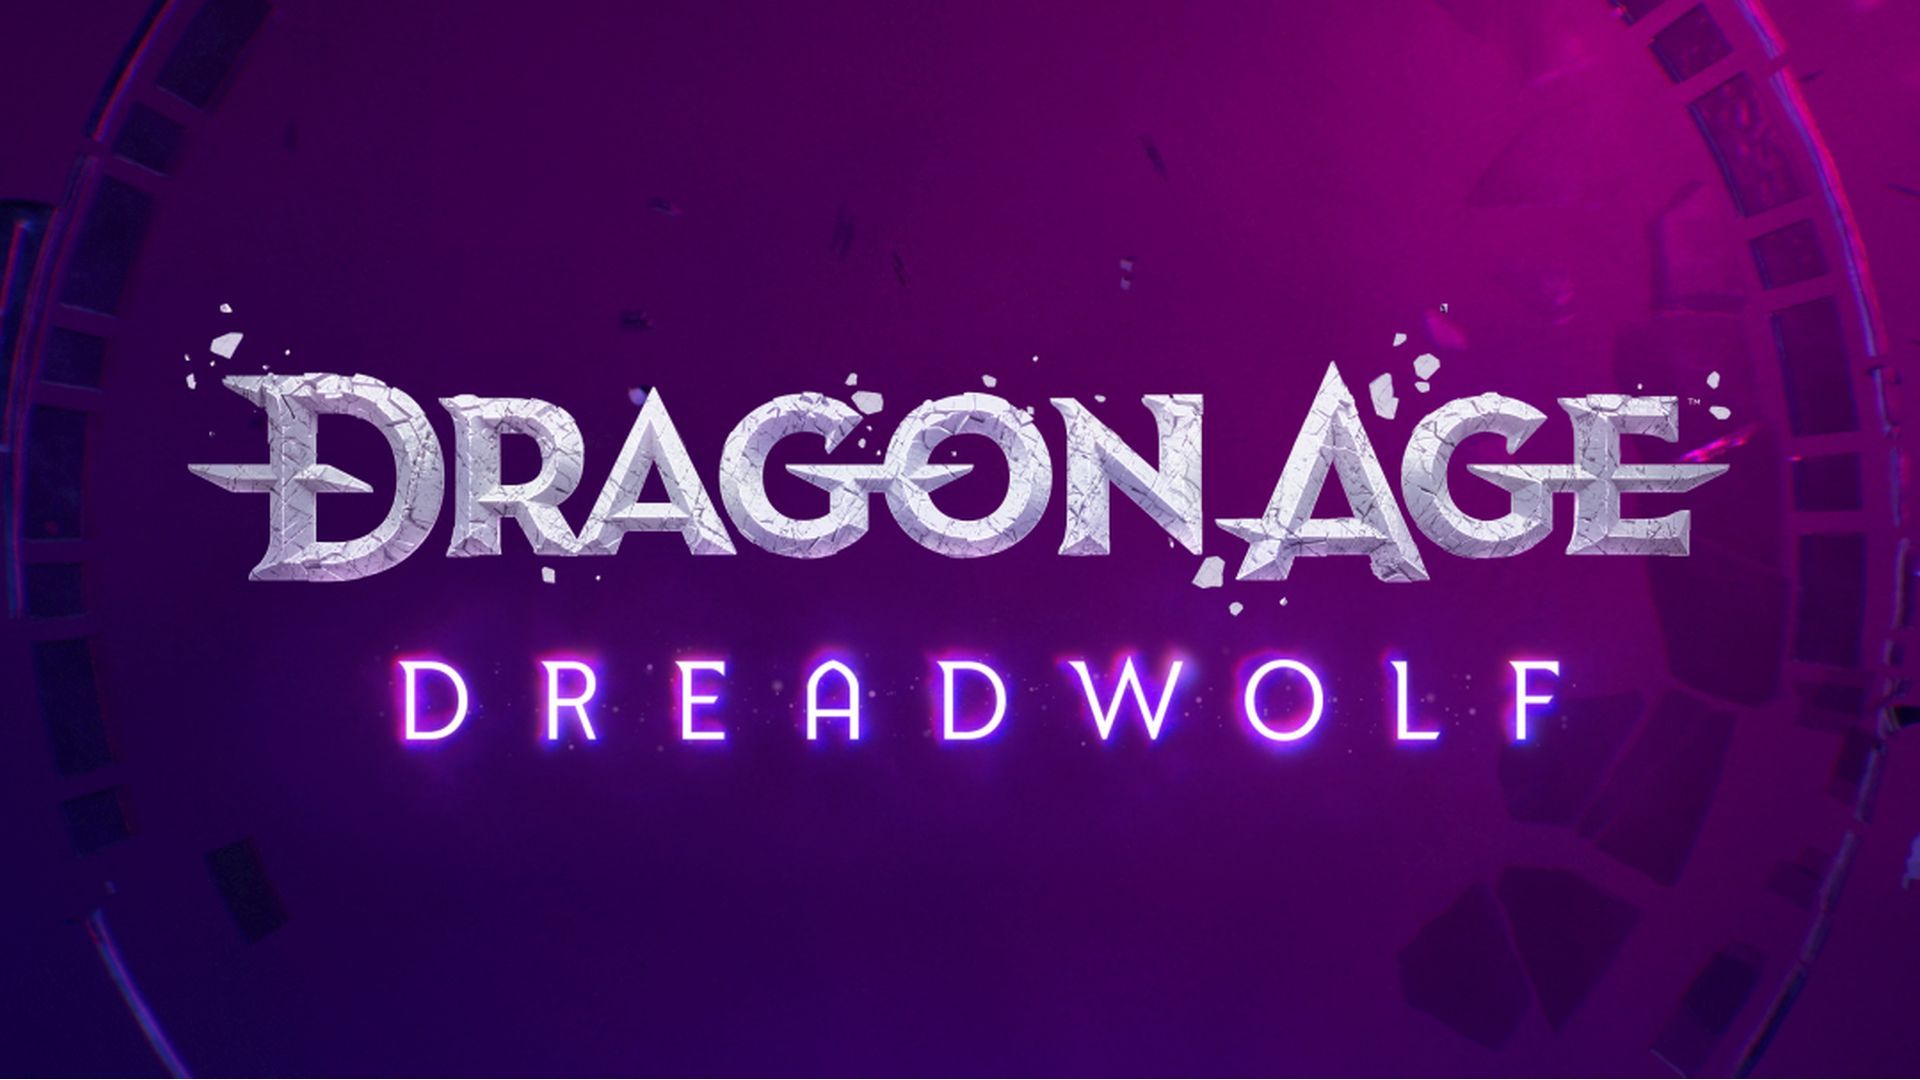 نسخه بعدی بازی Dragon Age با نام Dreadwolf شناخته خواهد شد